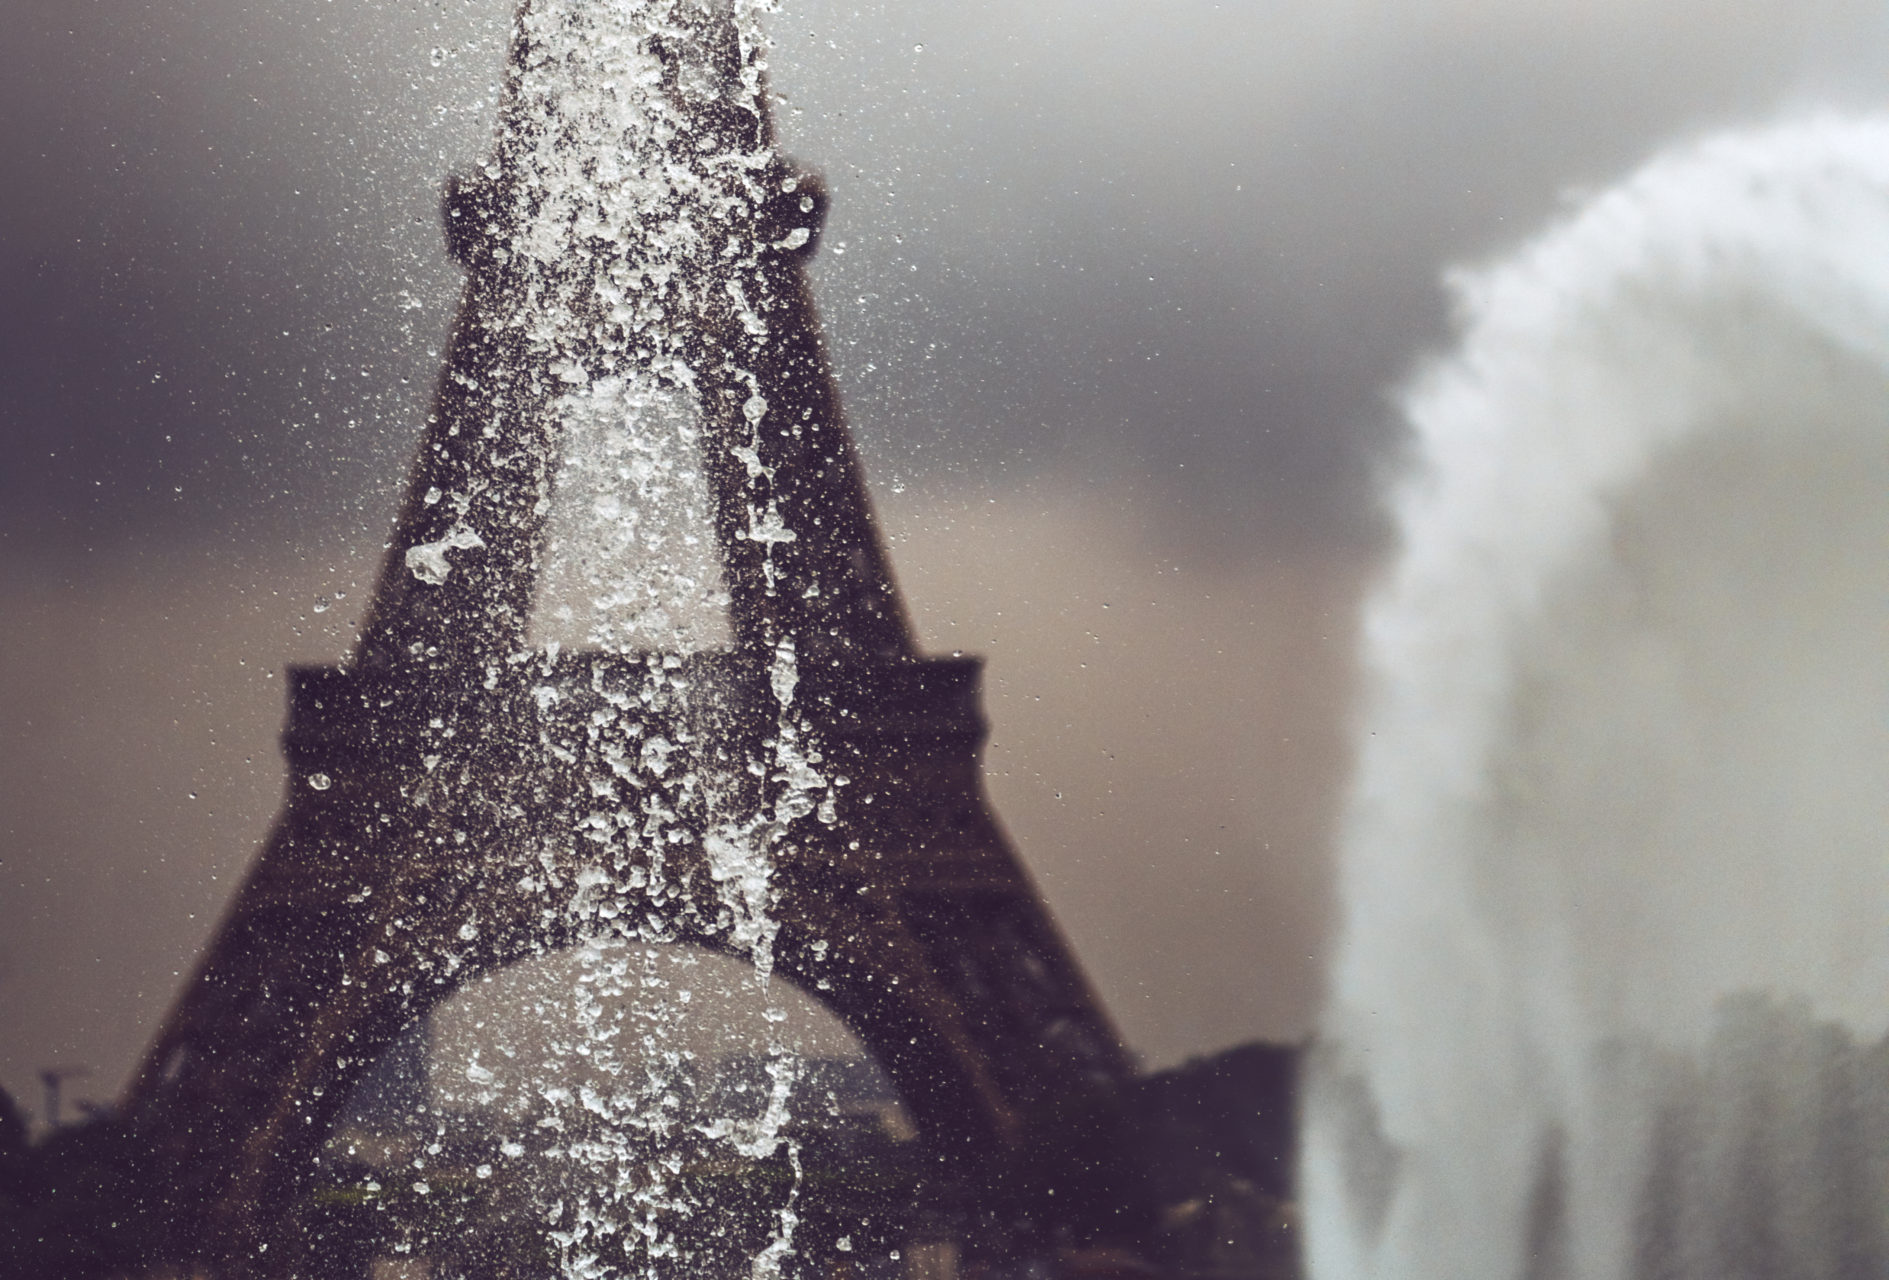 Eiffel Tower fand fountain in Paris, France